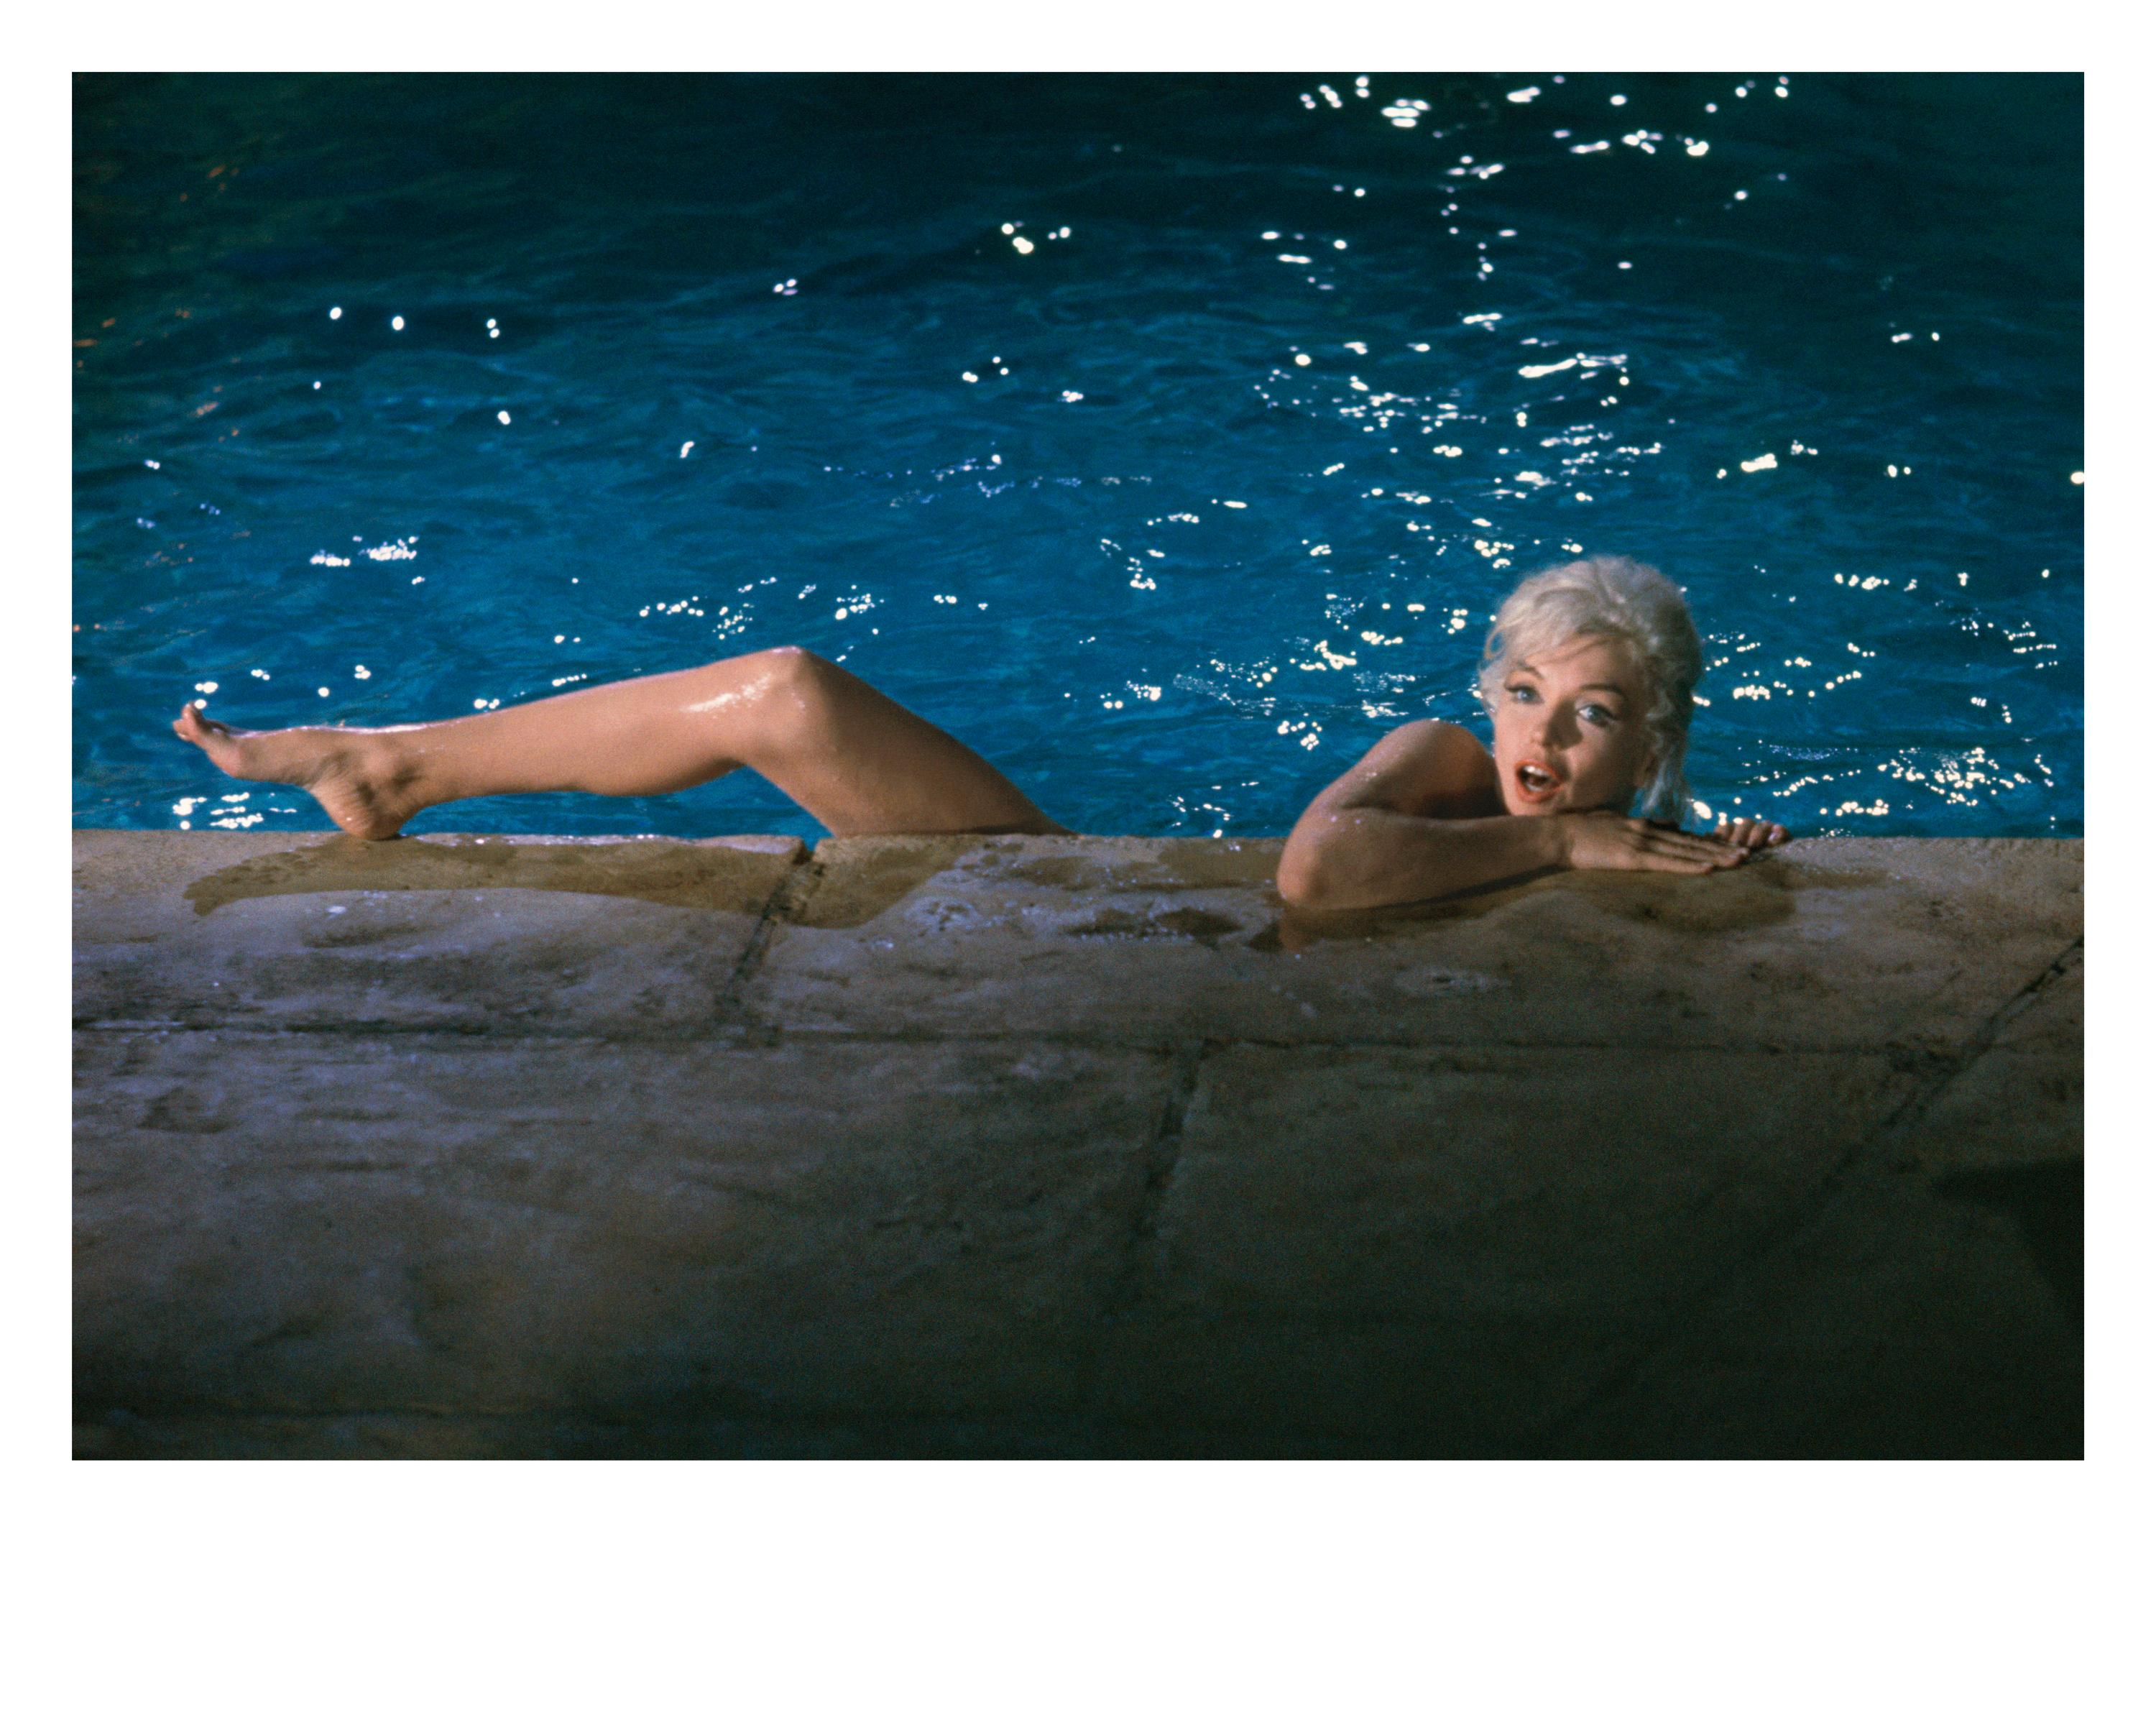 Hollywood-Fotografie von Lawrence Schiller ''Marilyn Monroe'' aus den 1960er Jahren